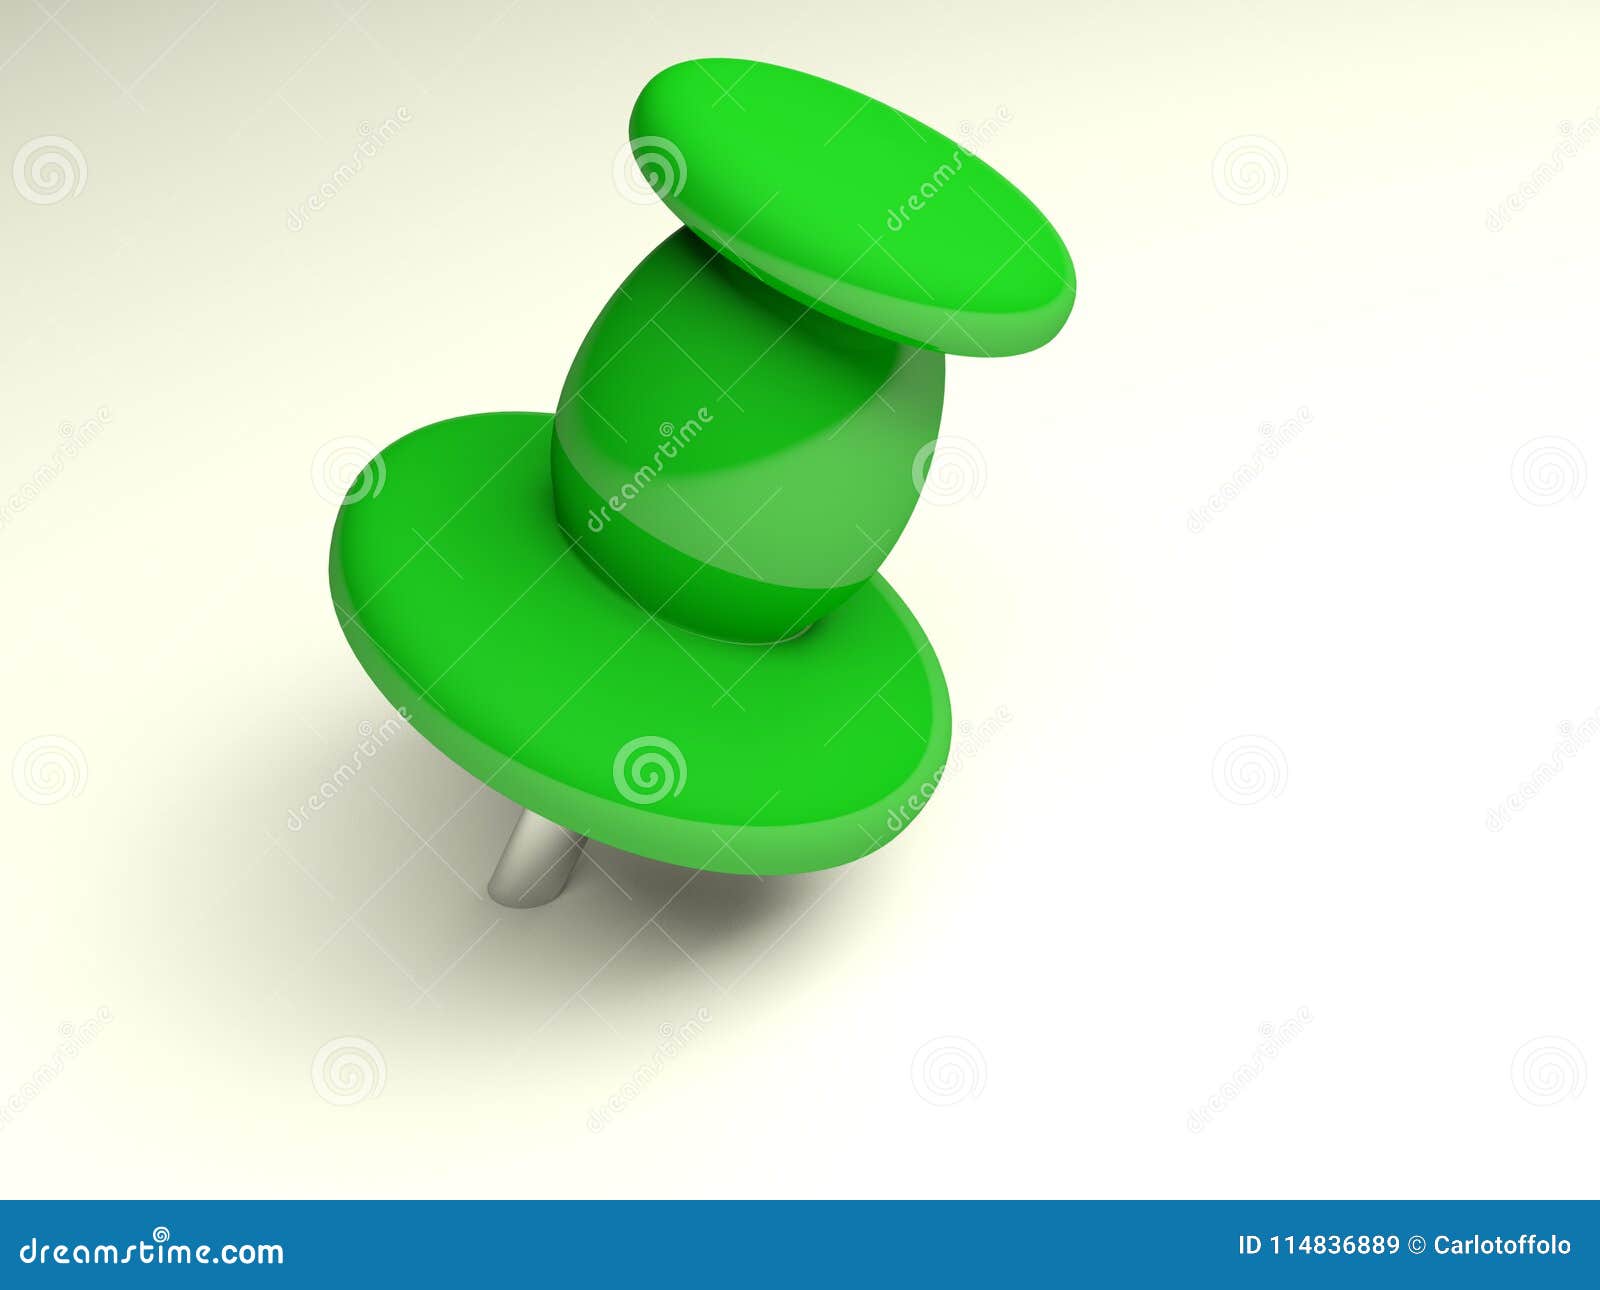 Green Thumbtack on White Paper - 3D Rendering Stock Illustration ...